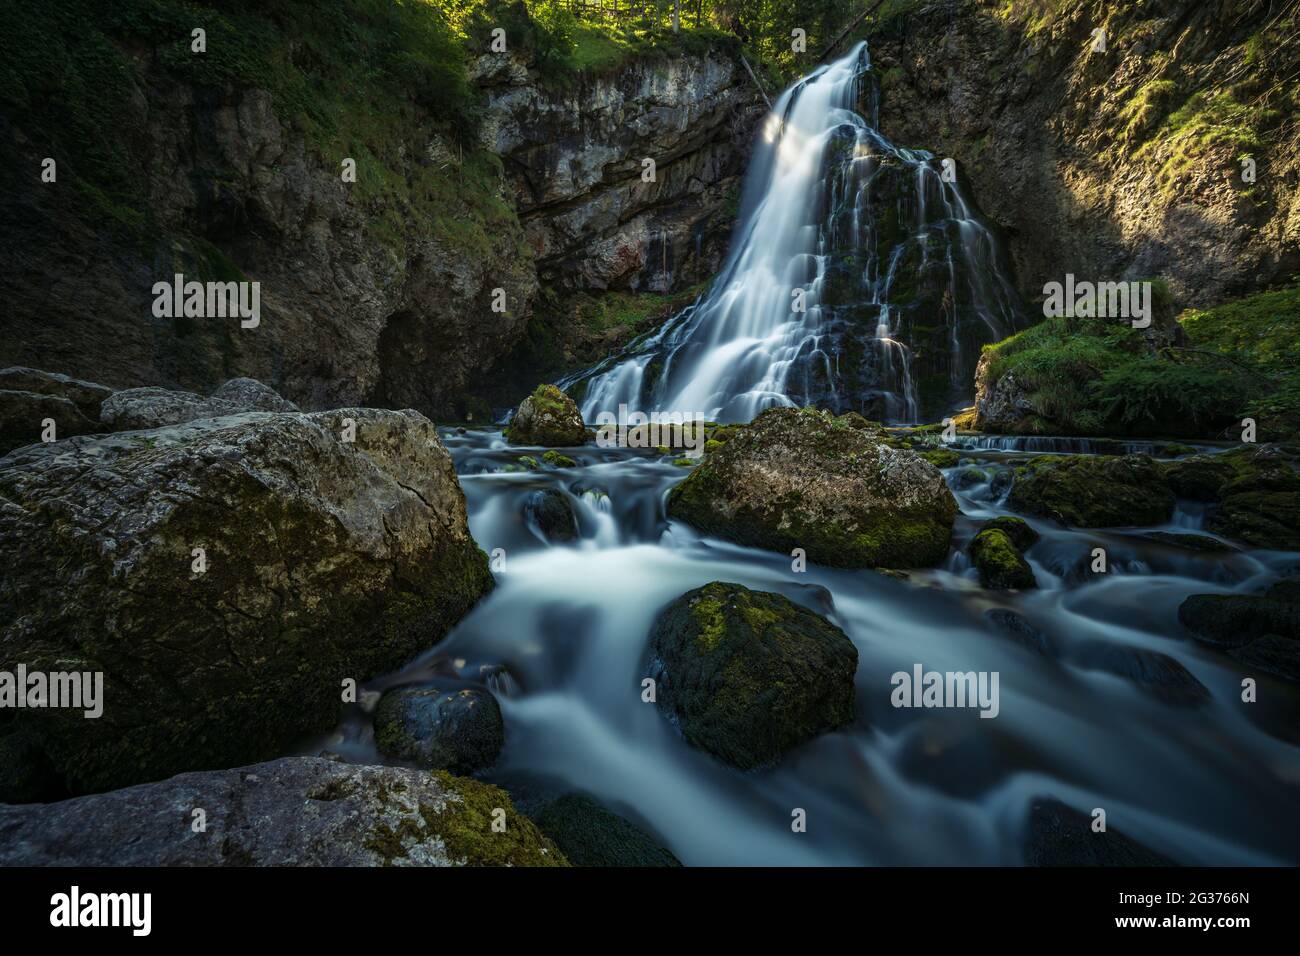 Der Gollinger Wasserfall im Sommer ins ein schönes Familienausflugsziel Banque D'Images